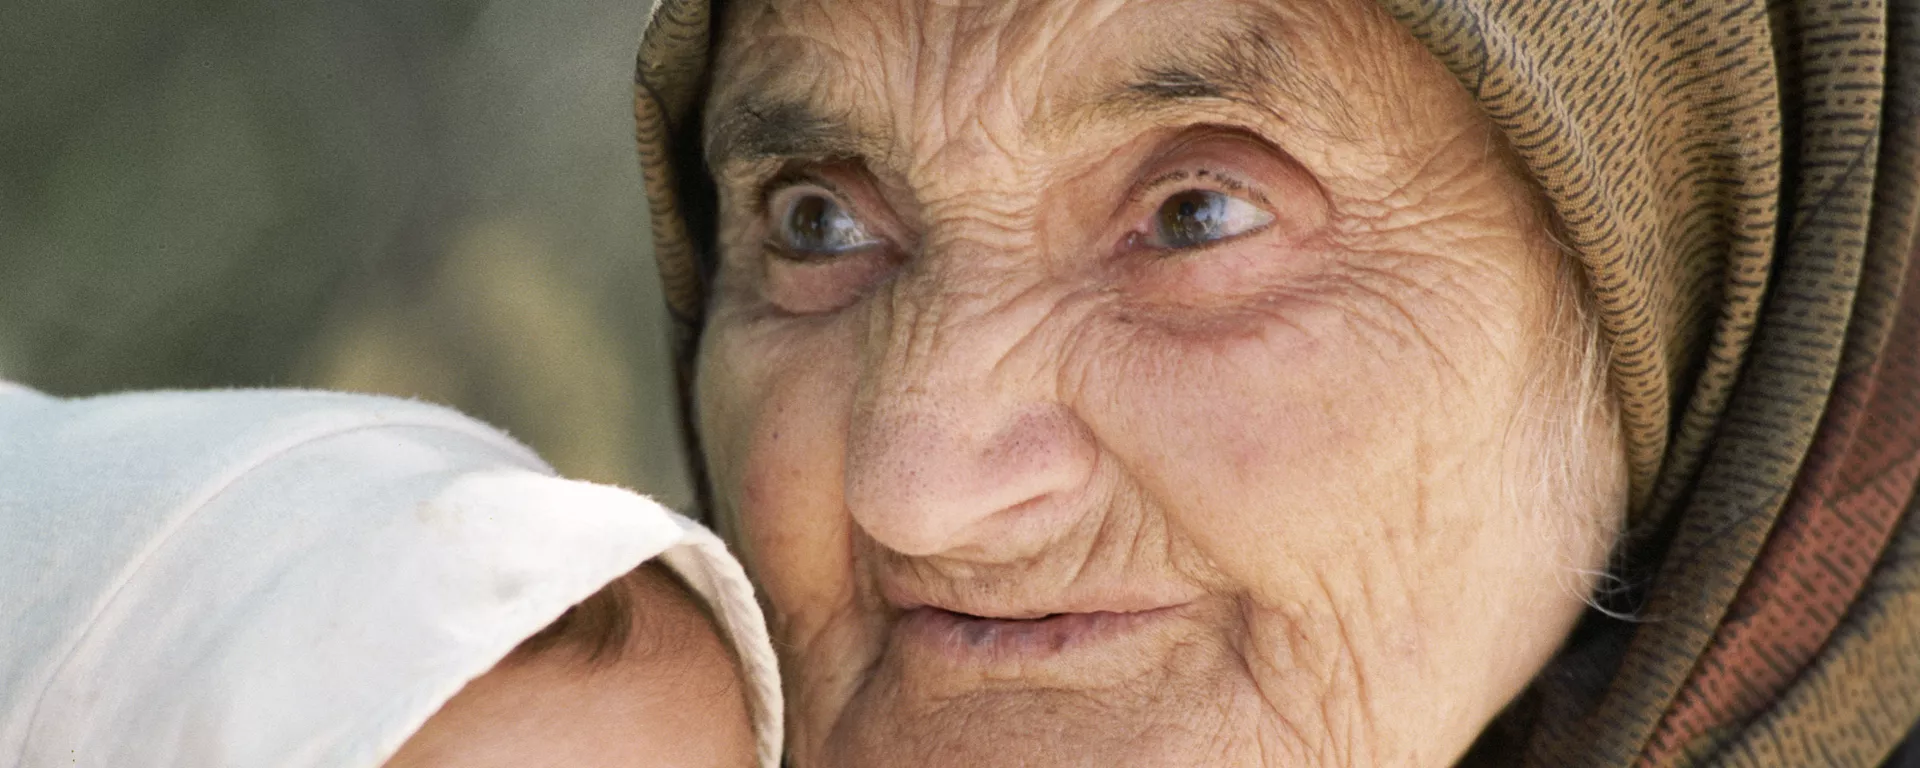 Старая женщина и ребенок - Sputnik Таджикистан, 1920, 21.07.2021